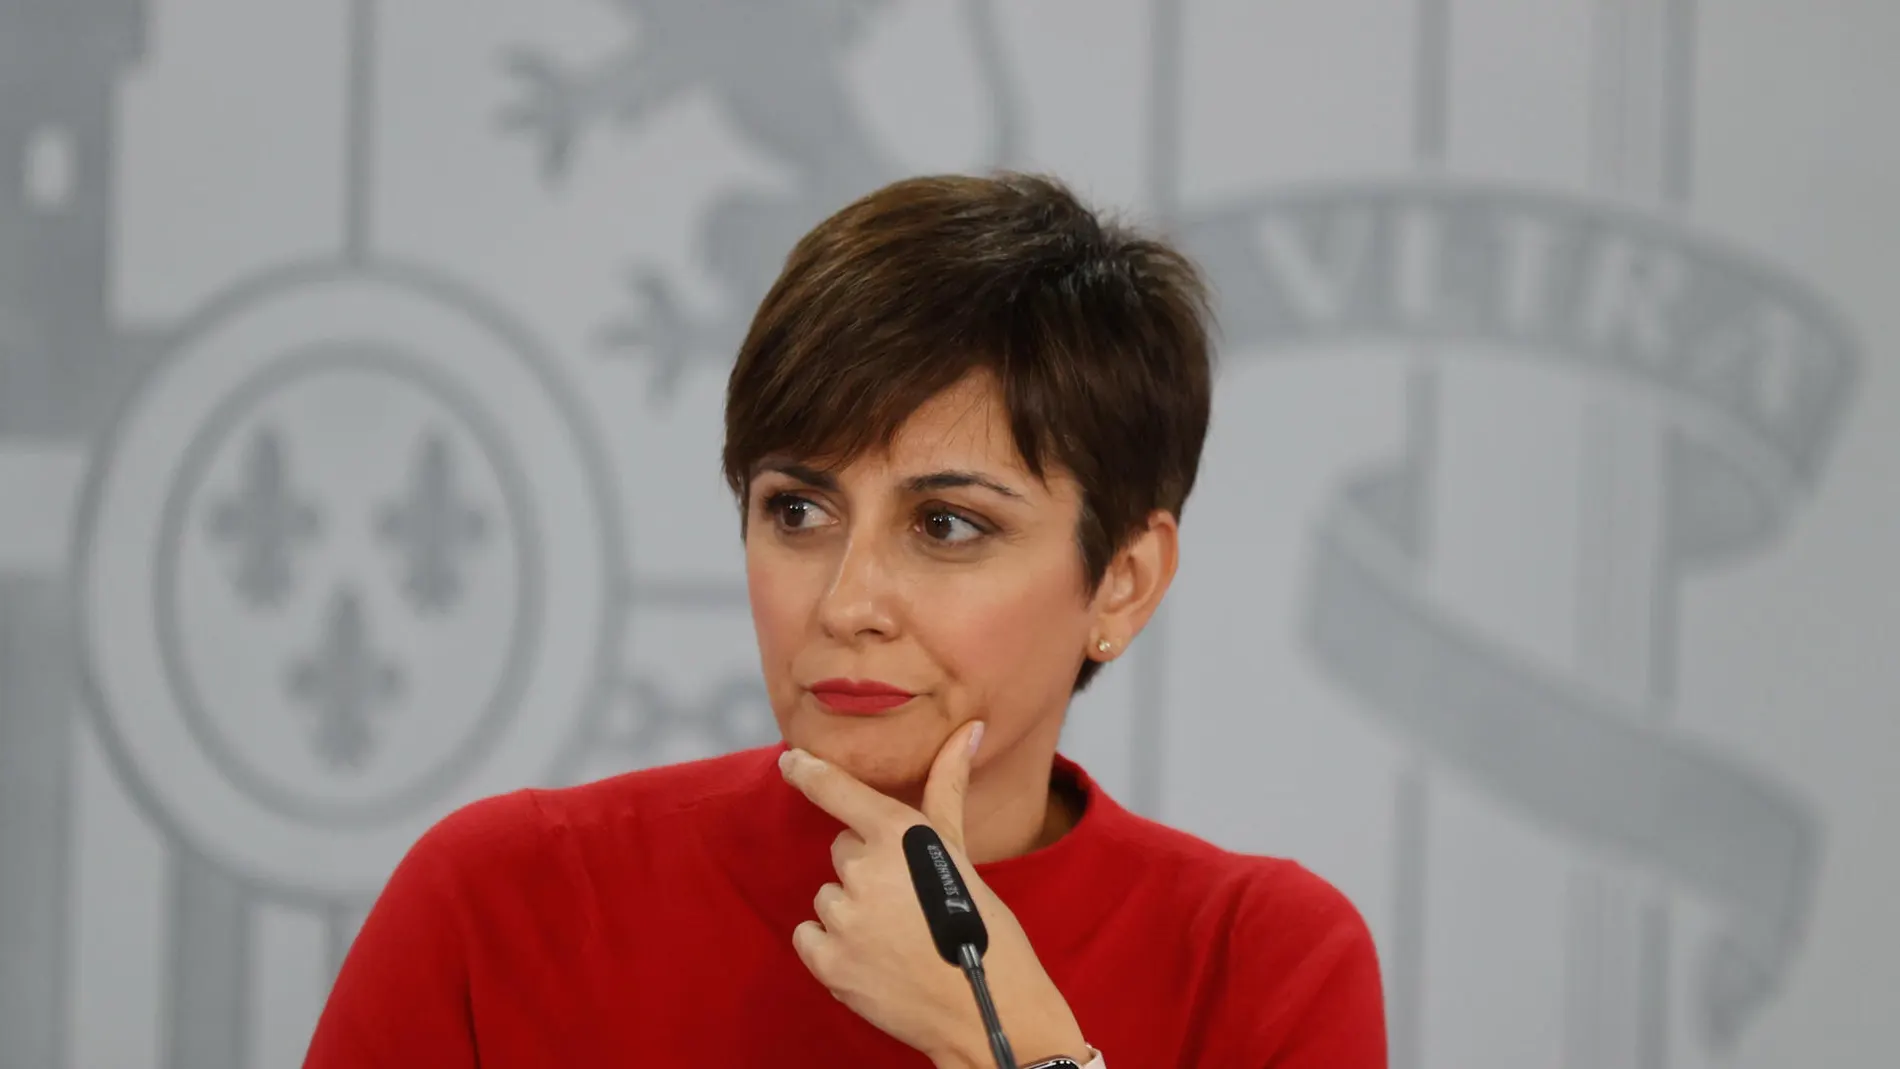 Imagen de la ministra de Política Territorial y portavoz del Gobierno, Isabel Rodríguez